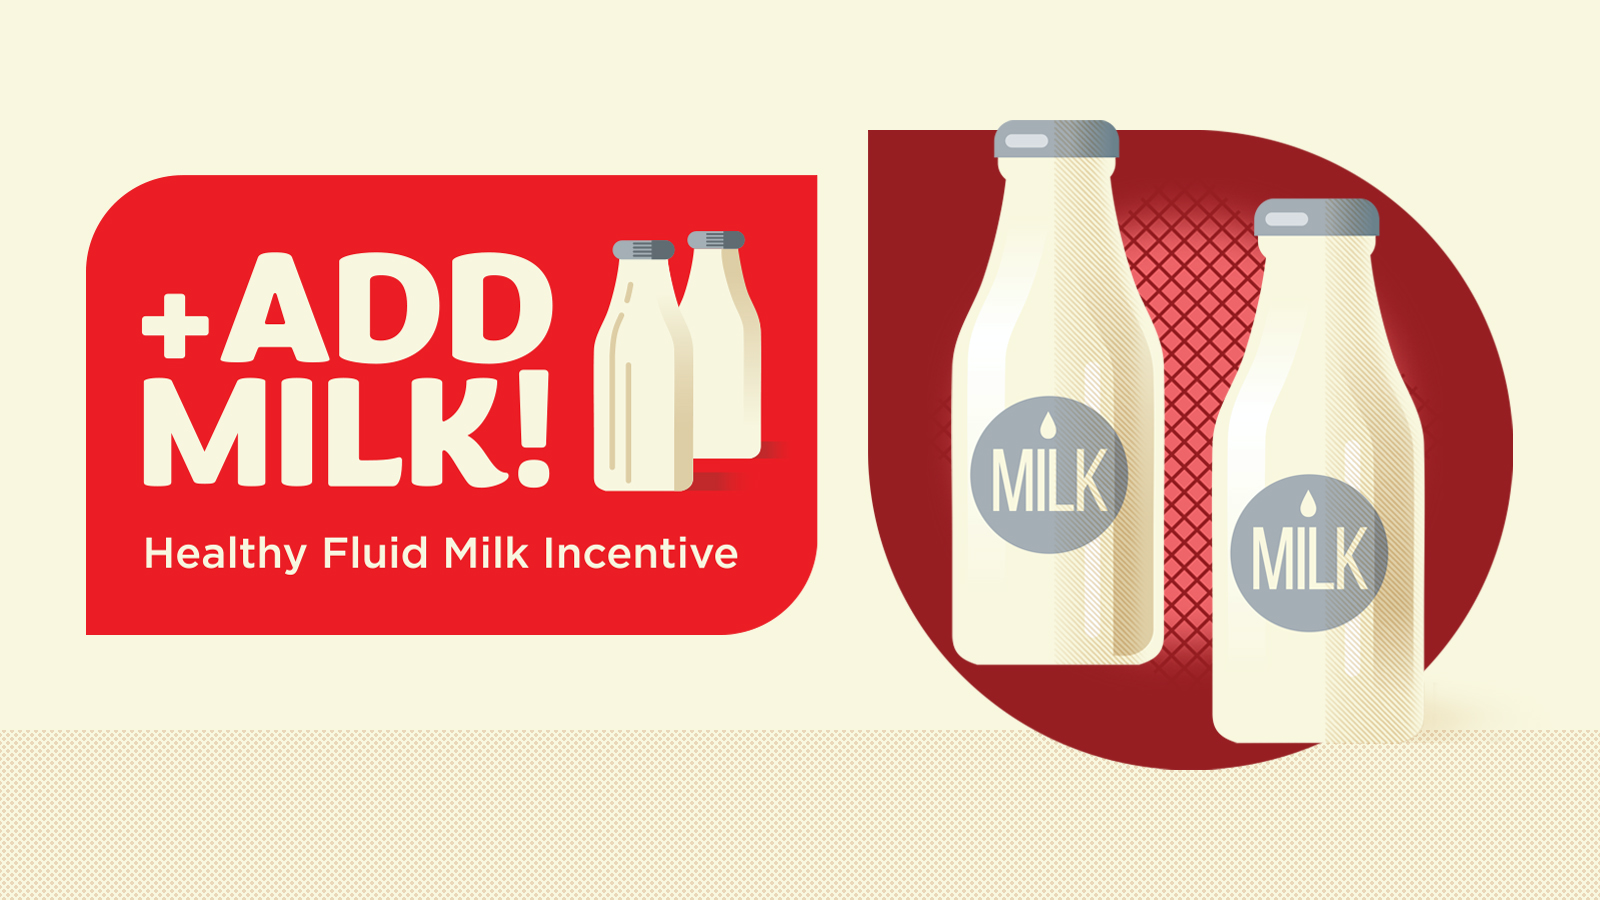 Add Milk! Healthy Fluid Milk Incentive